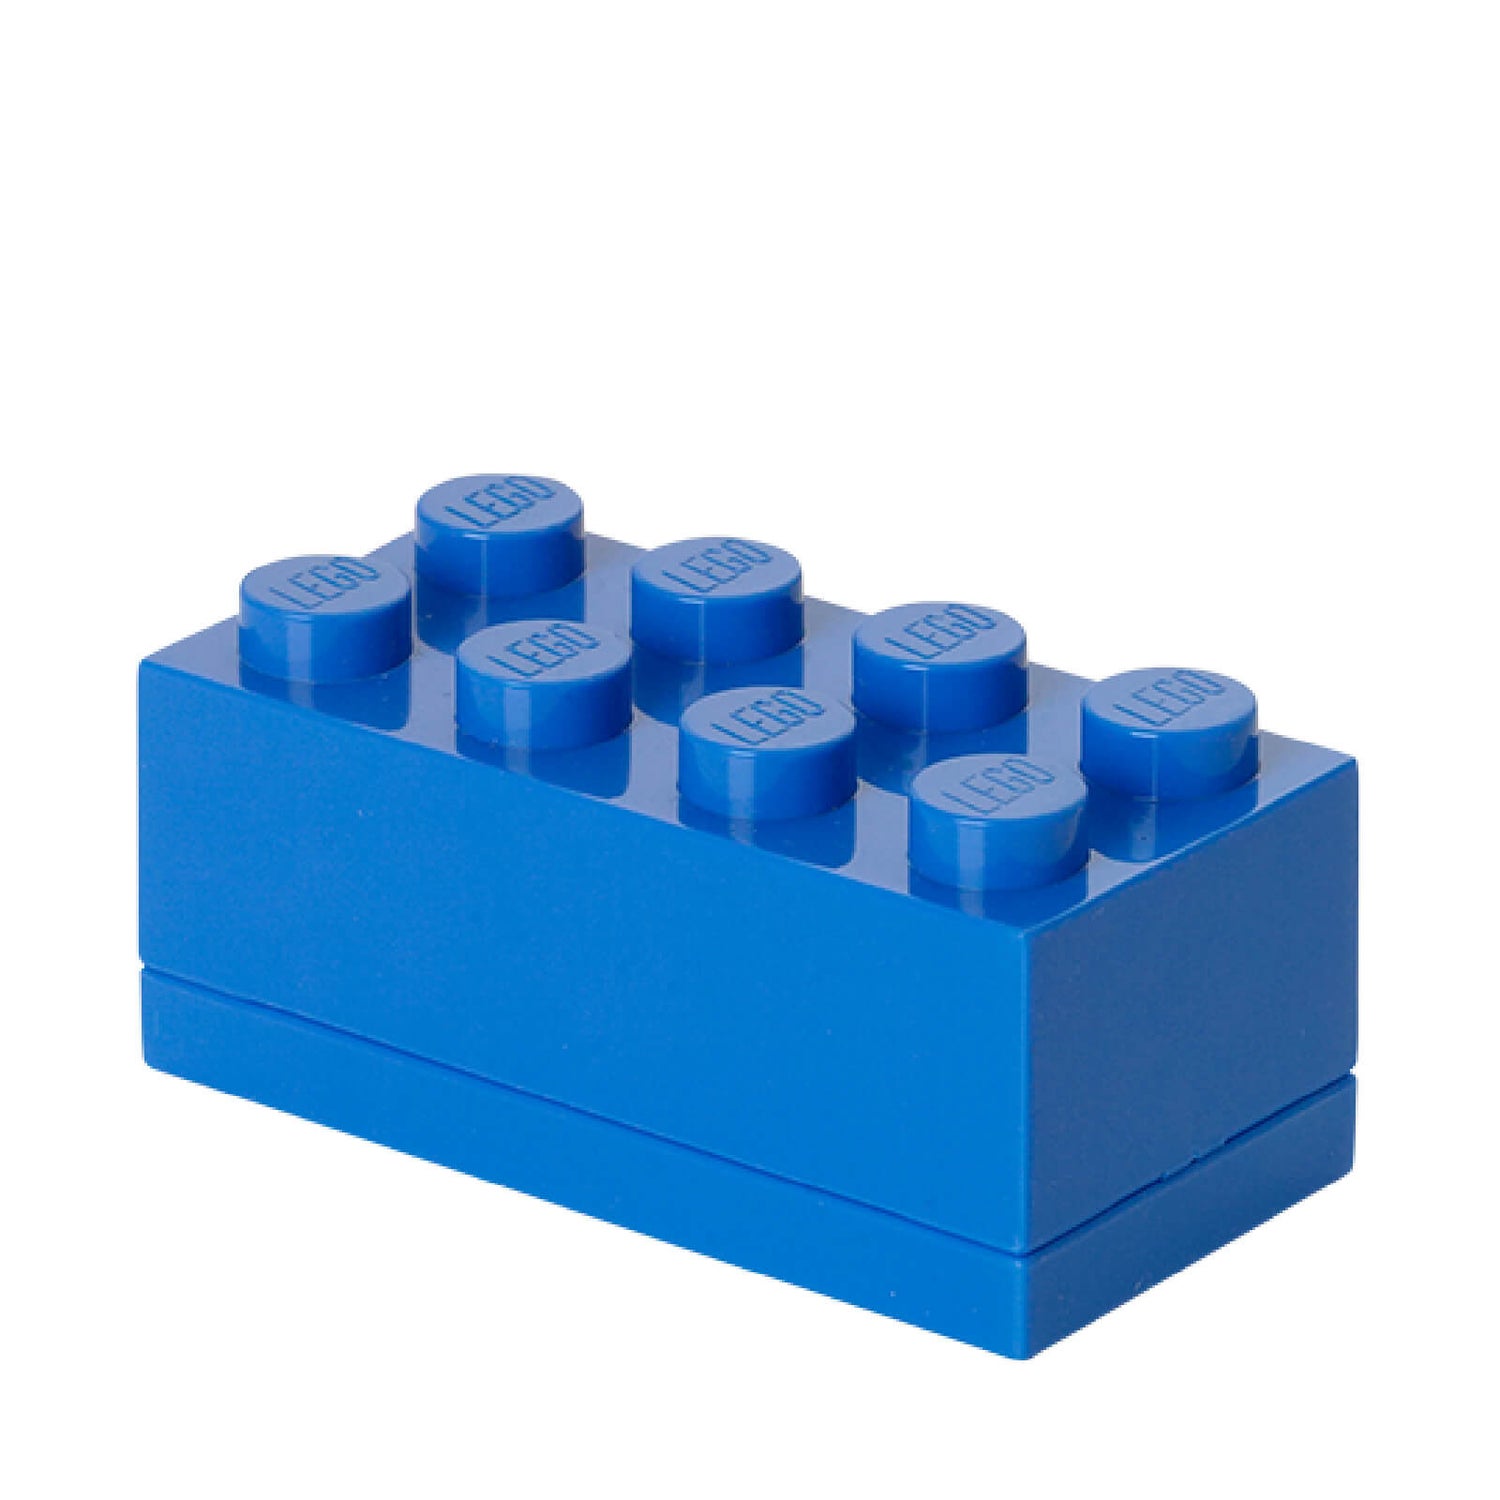 LEGO Mini Box 8 - Bright Blue